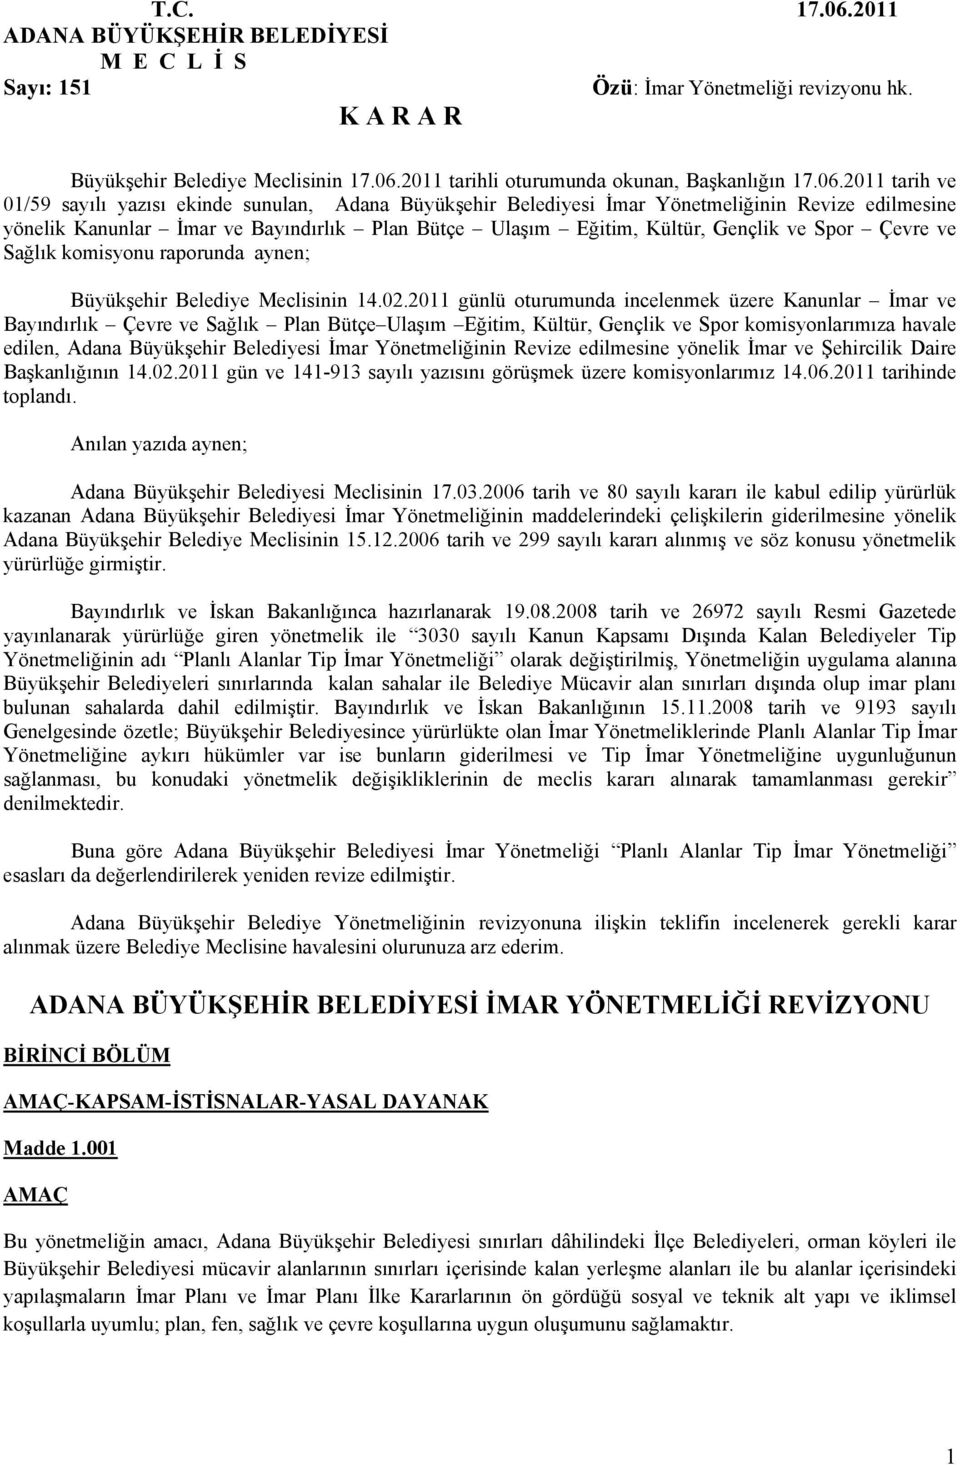 2011 tarih ve 01/59 sayılı yazısı ekinde sunulan, Adana Büyükşehir Belediyesi İmar Yönetmeliğinin Revize edilmesine yönelik Kanunlar İmar ve Bayındırlık Plan Bütçe Ulaşım Eğitim, Kültür, Gençlik ve